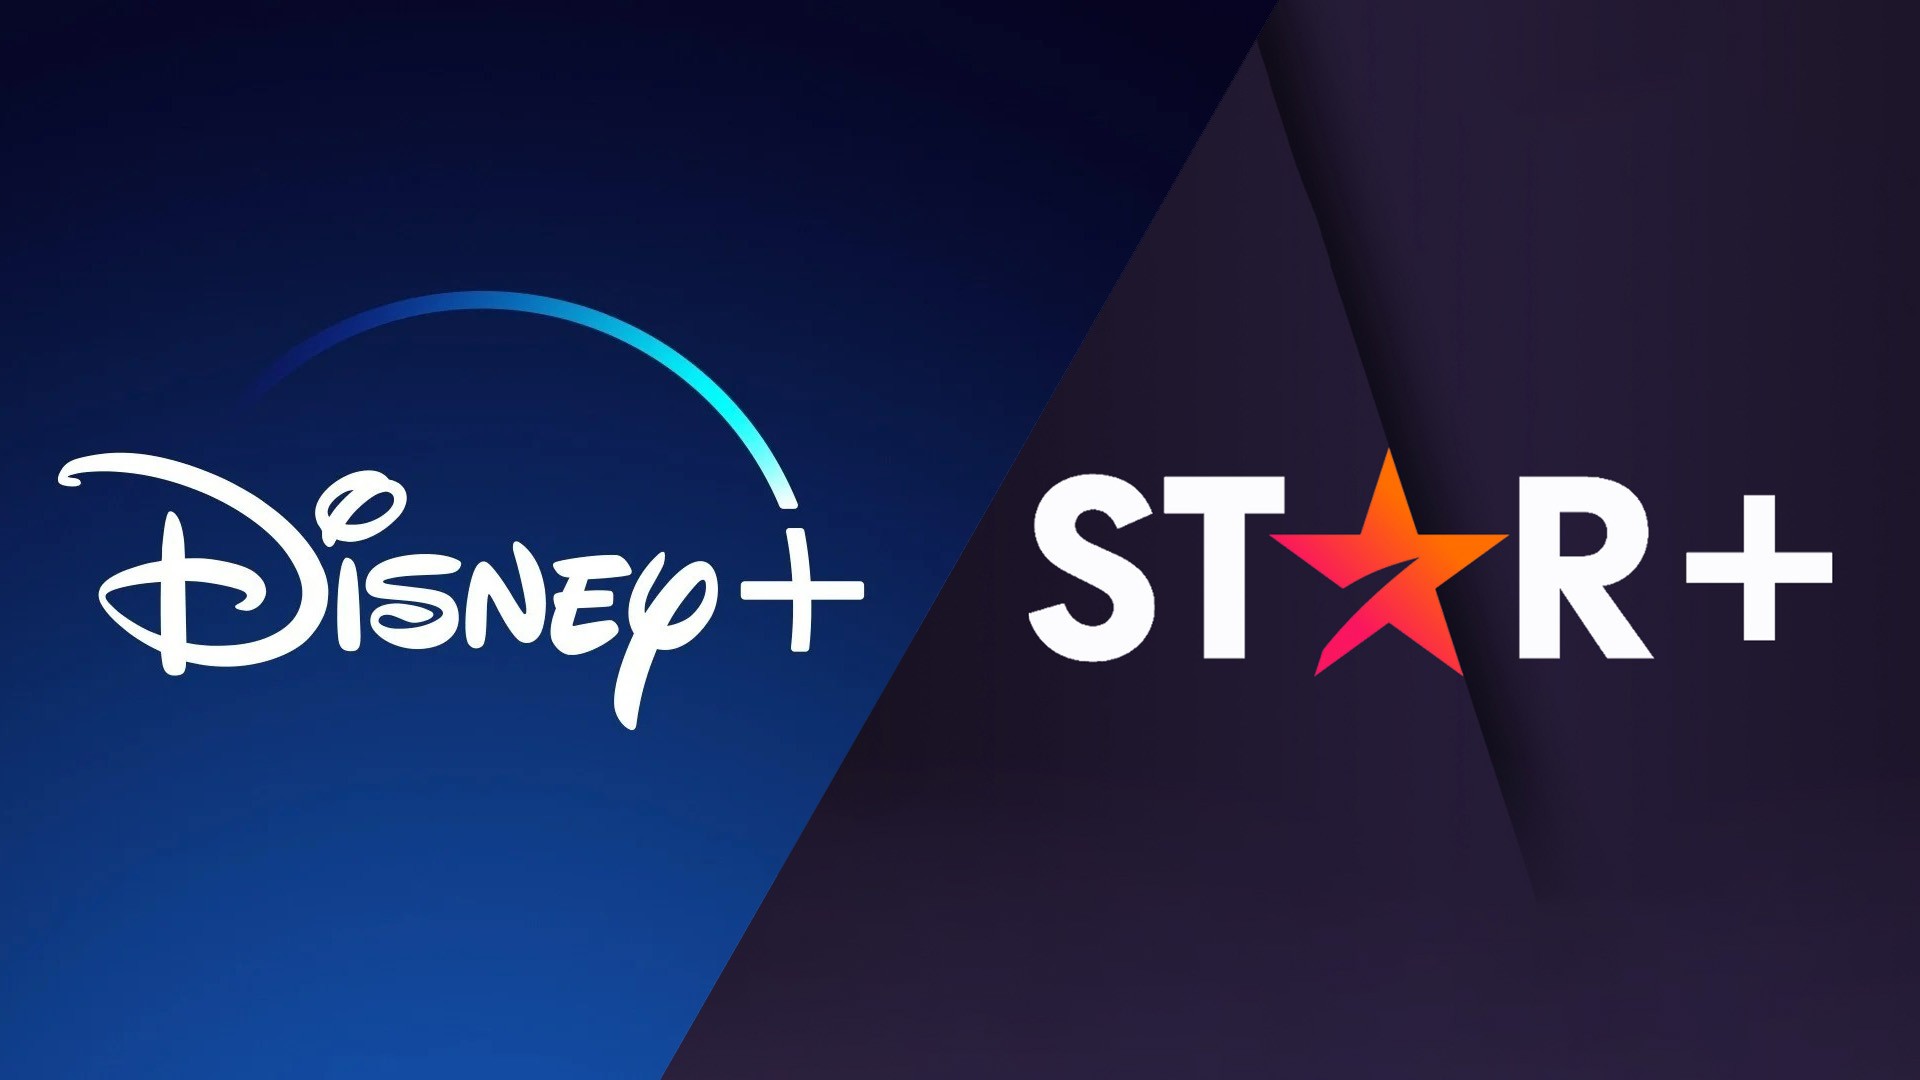 Disney adquire os direitos da nova temporada de Tokyo Revengers